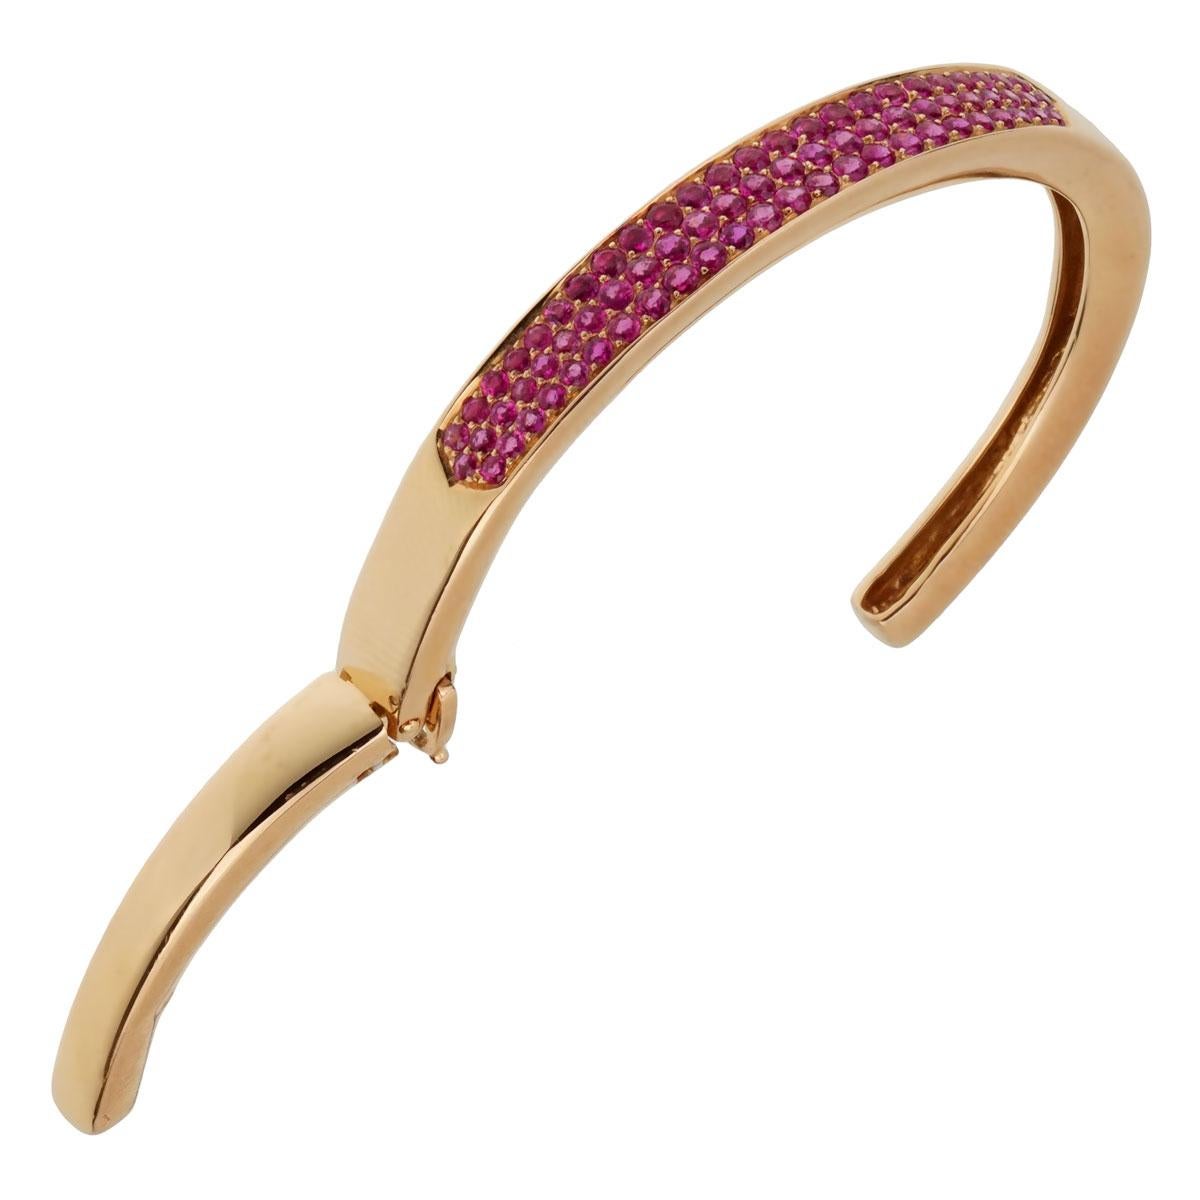 Ein fabelhaftes Van Cleef & Arpels Armband um 1980, dieses luxuriöse Armband verfügt über 3 Reihen von lebendigen rosa Saphiren in schimmernden 18 Karat Roségold gesetzt.